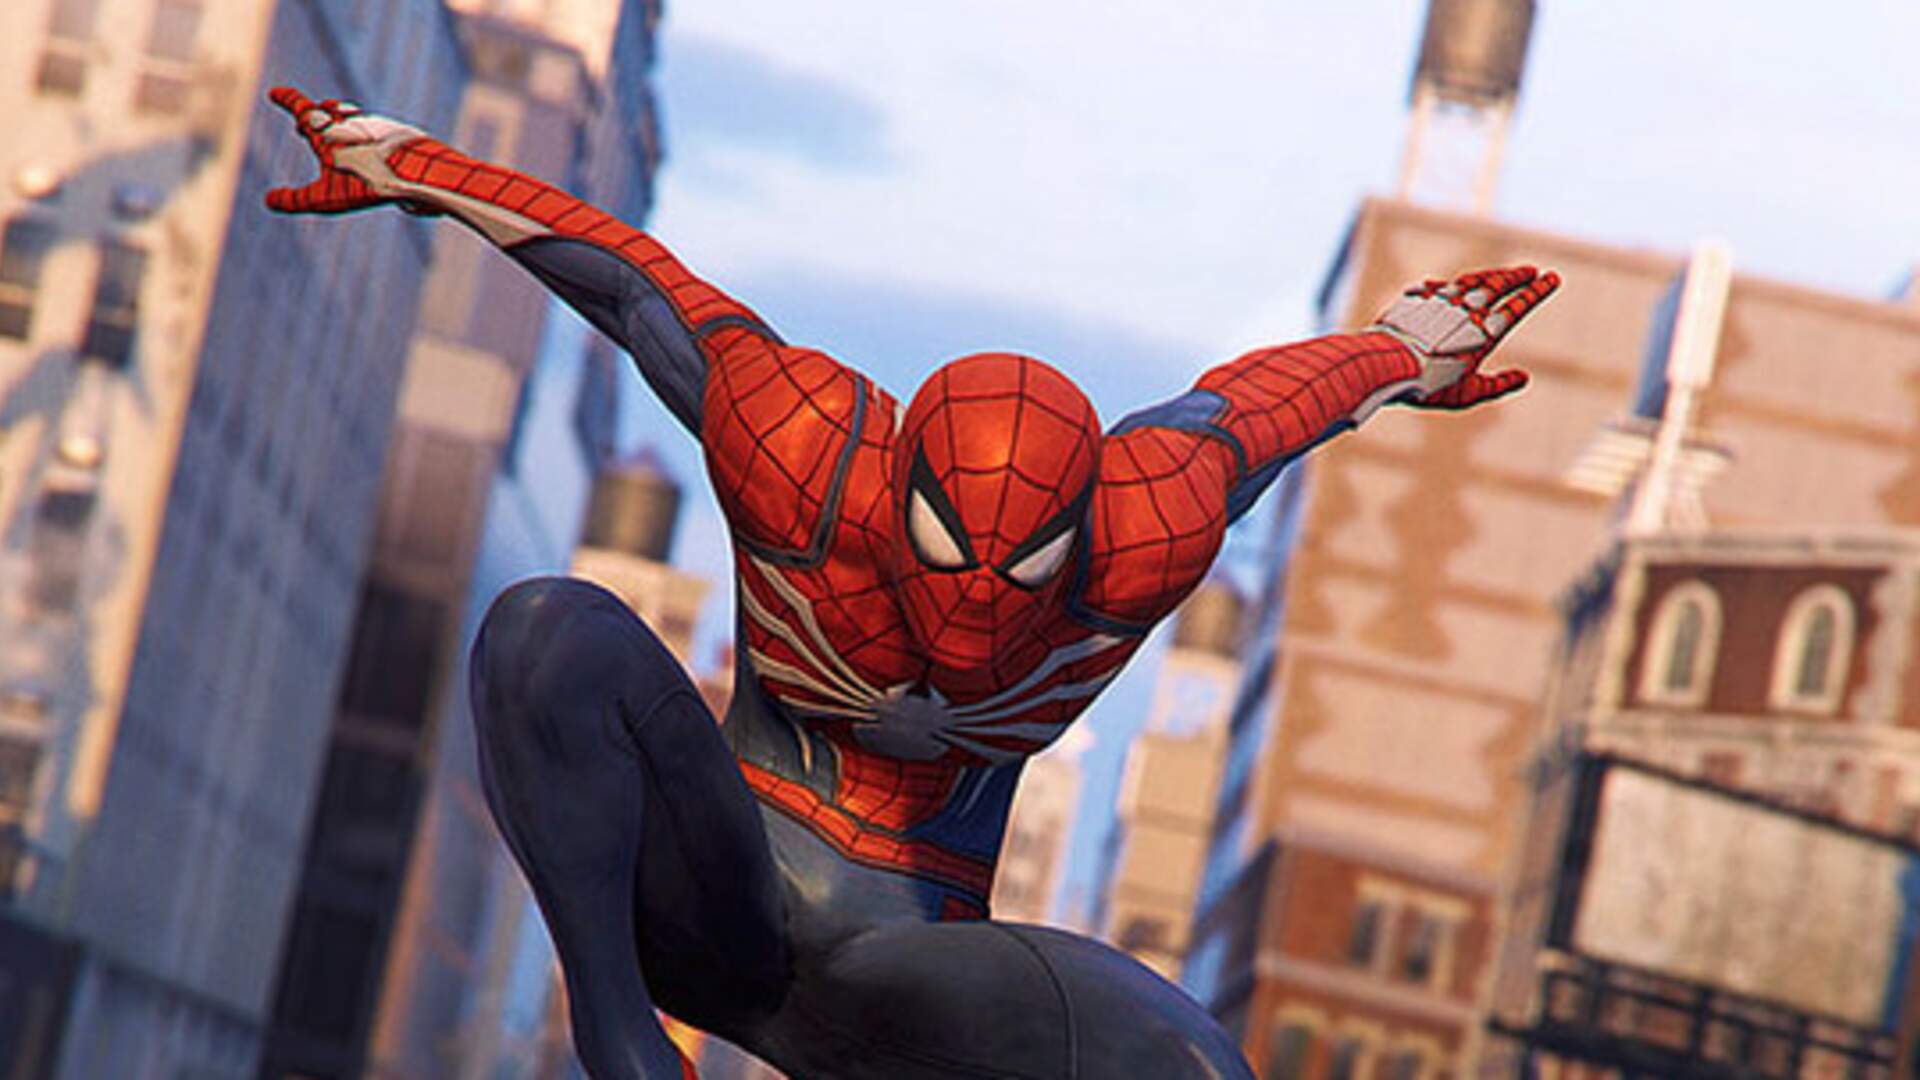 Marvel's Spider-Man Remastered Update 1.007.001